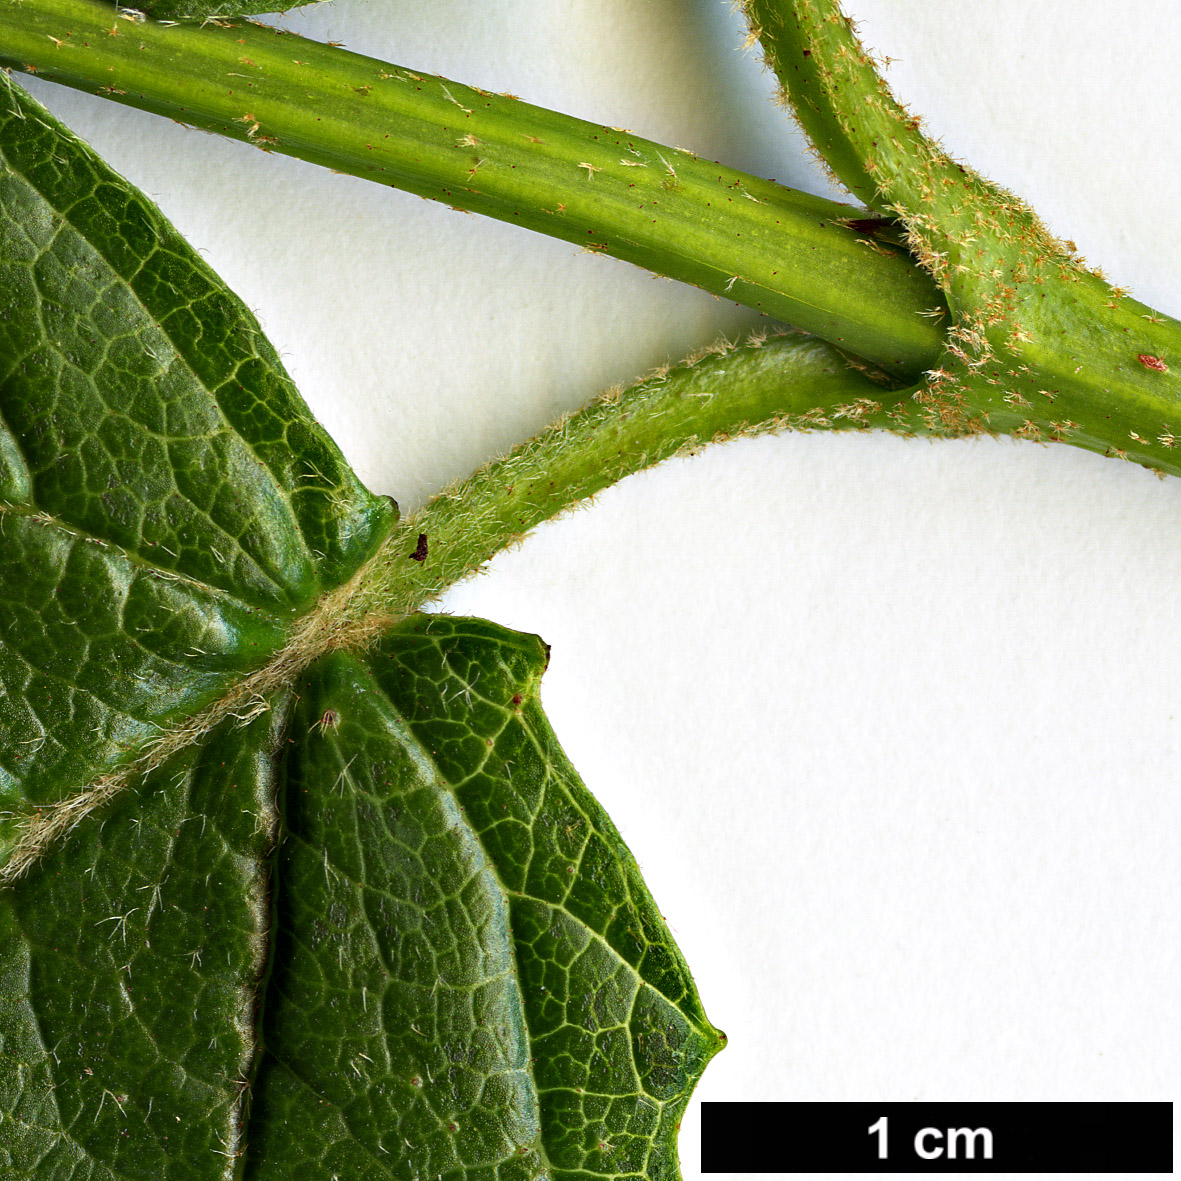 High resolution image: Family: Adoxaceae - Genus: Viburnum - Taxon: bracteatum